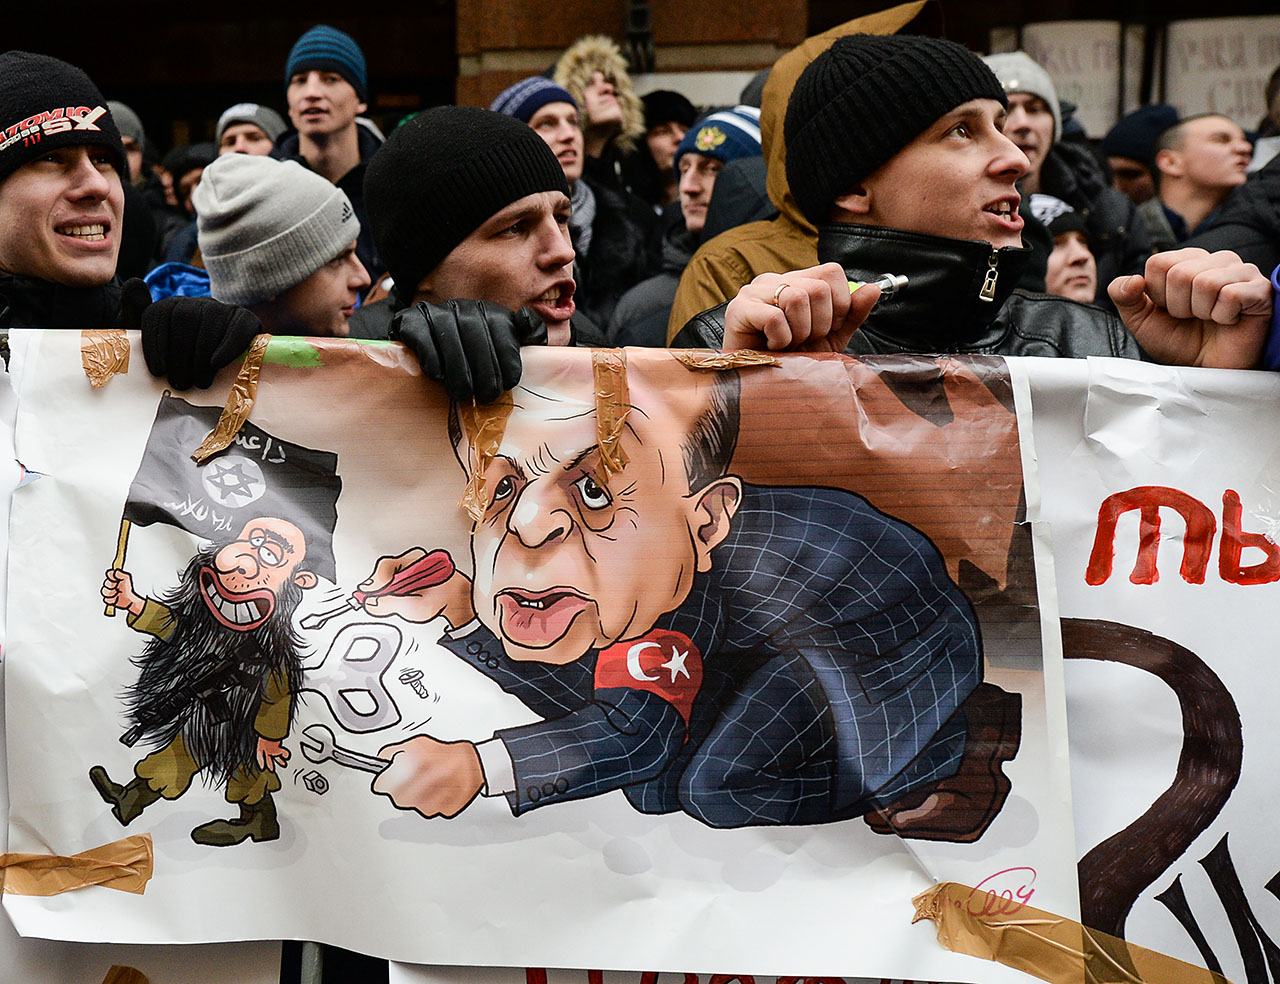 Orosz tüntetők a Török nagykövetség előtt Moszkvában Fotó: Europress/AFPAlexand Vilf